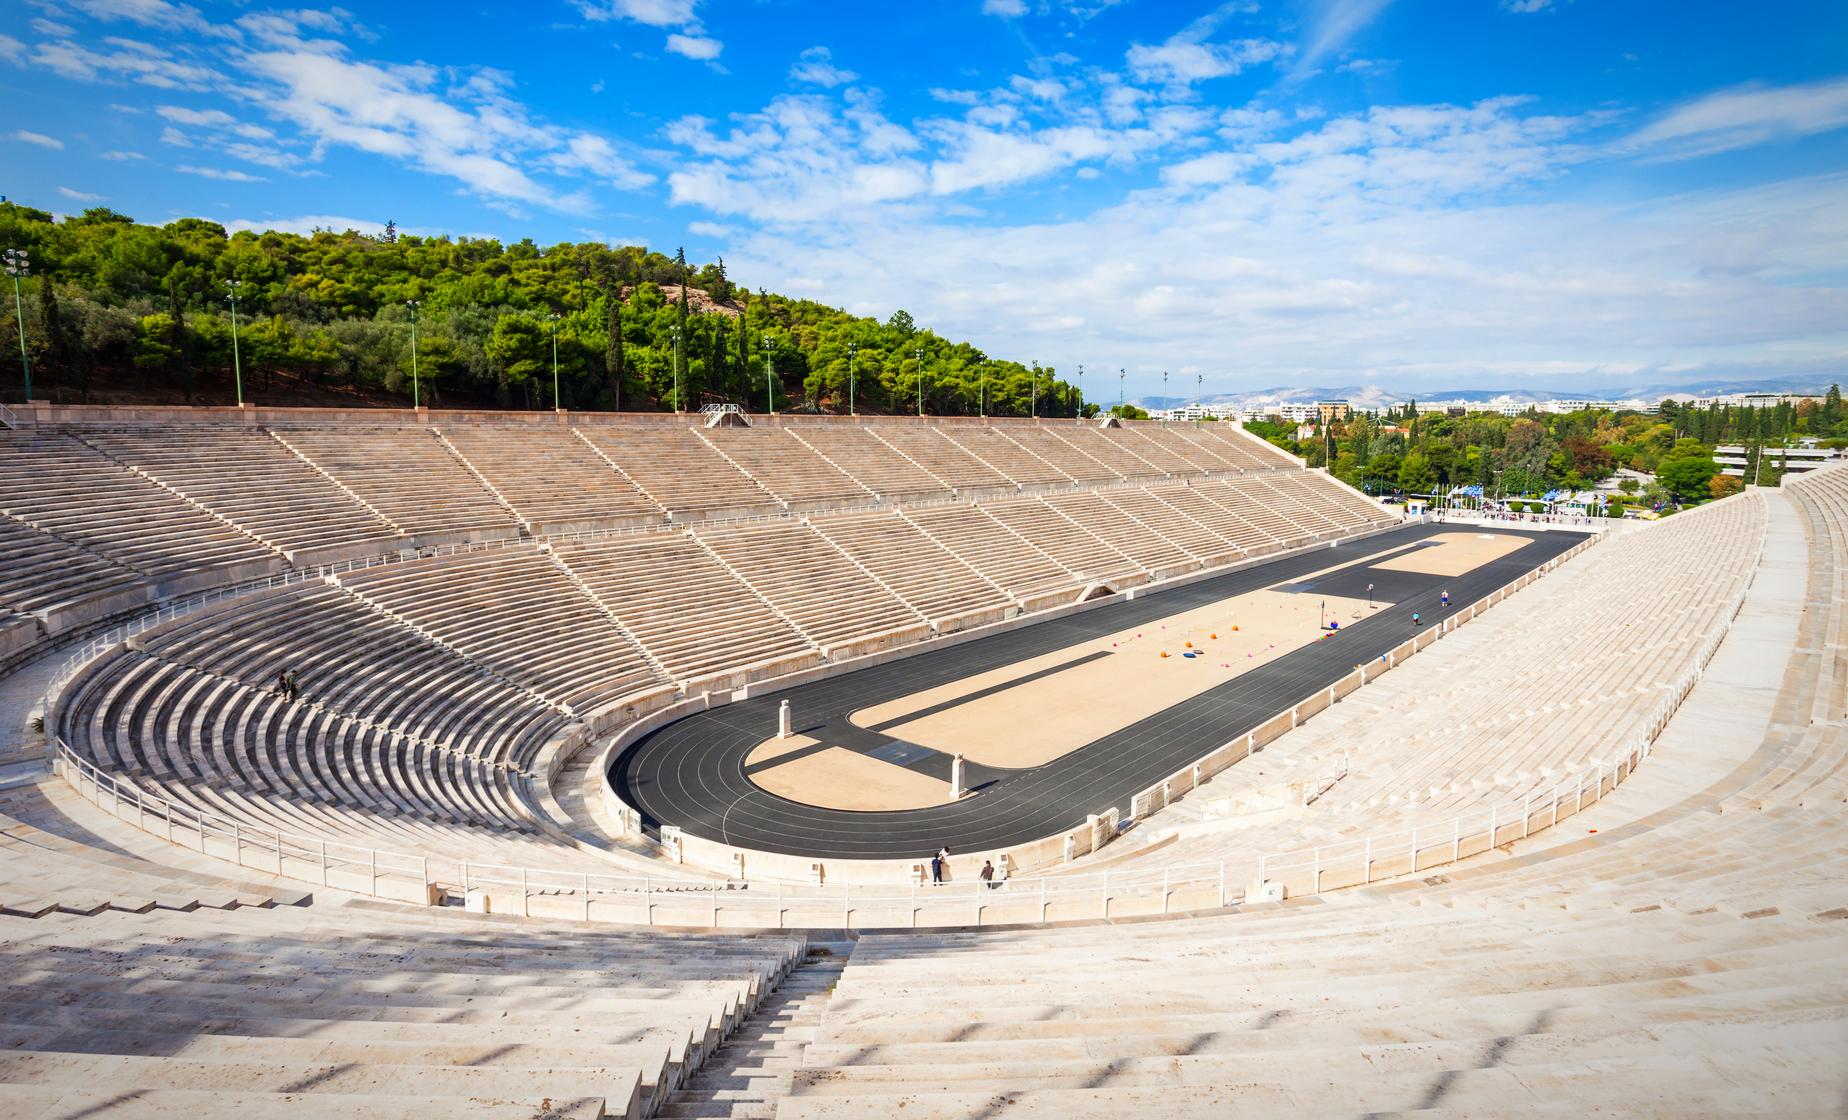 Private Athens and Panathenaic Olympic Stadium